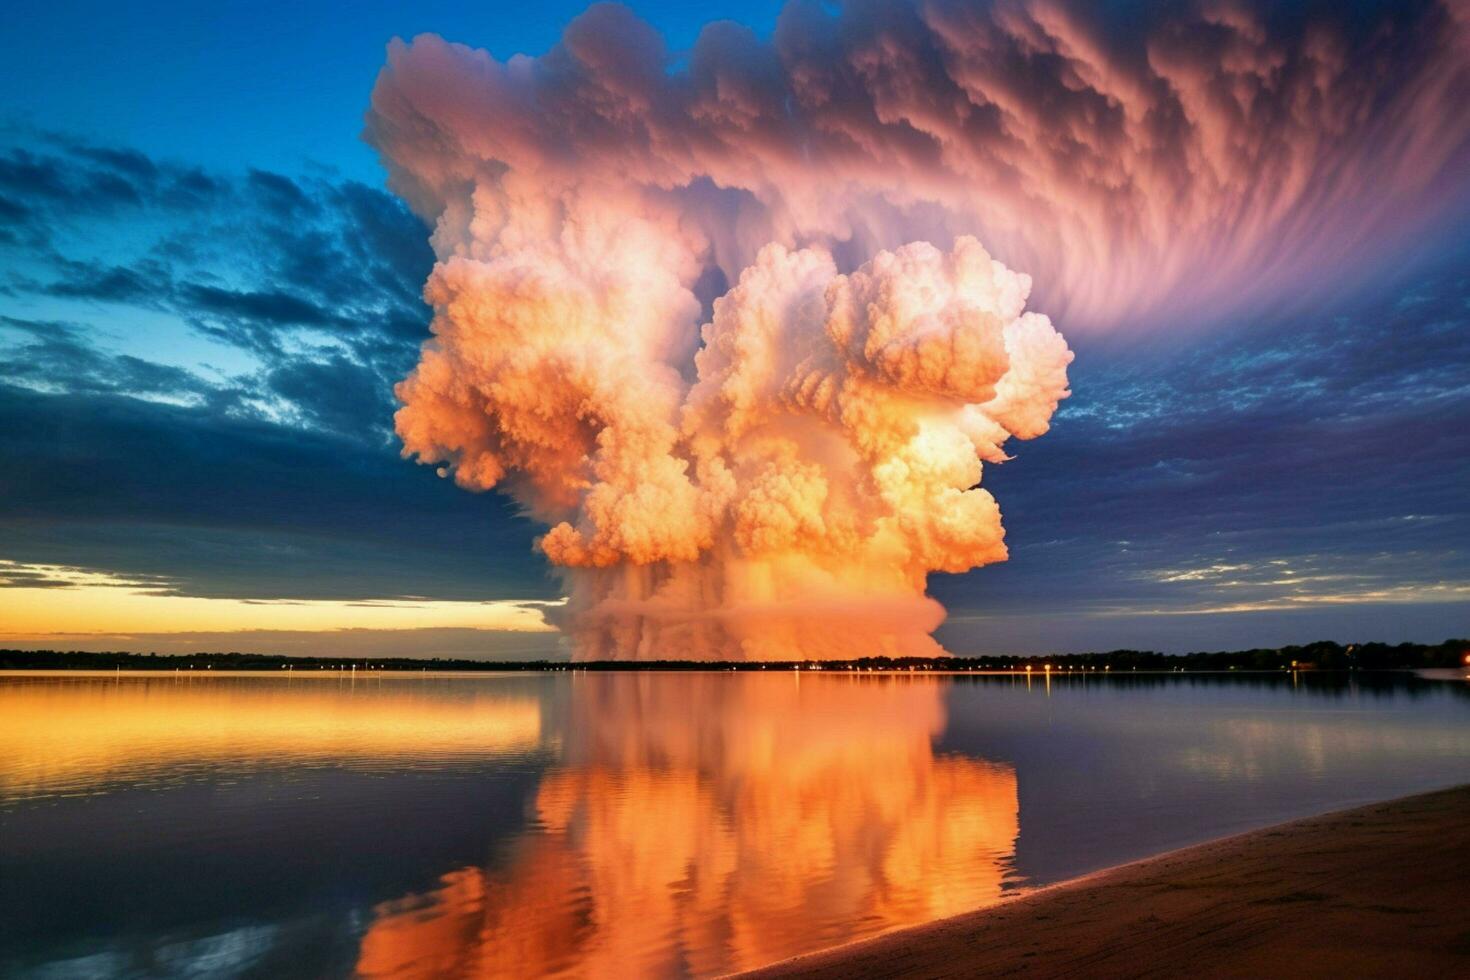 nube tramonto esplosione foto